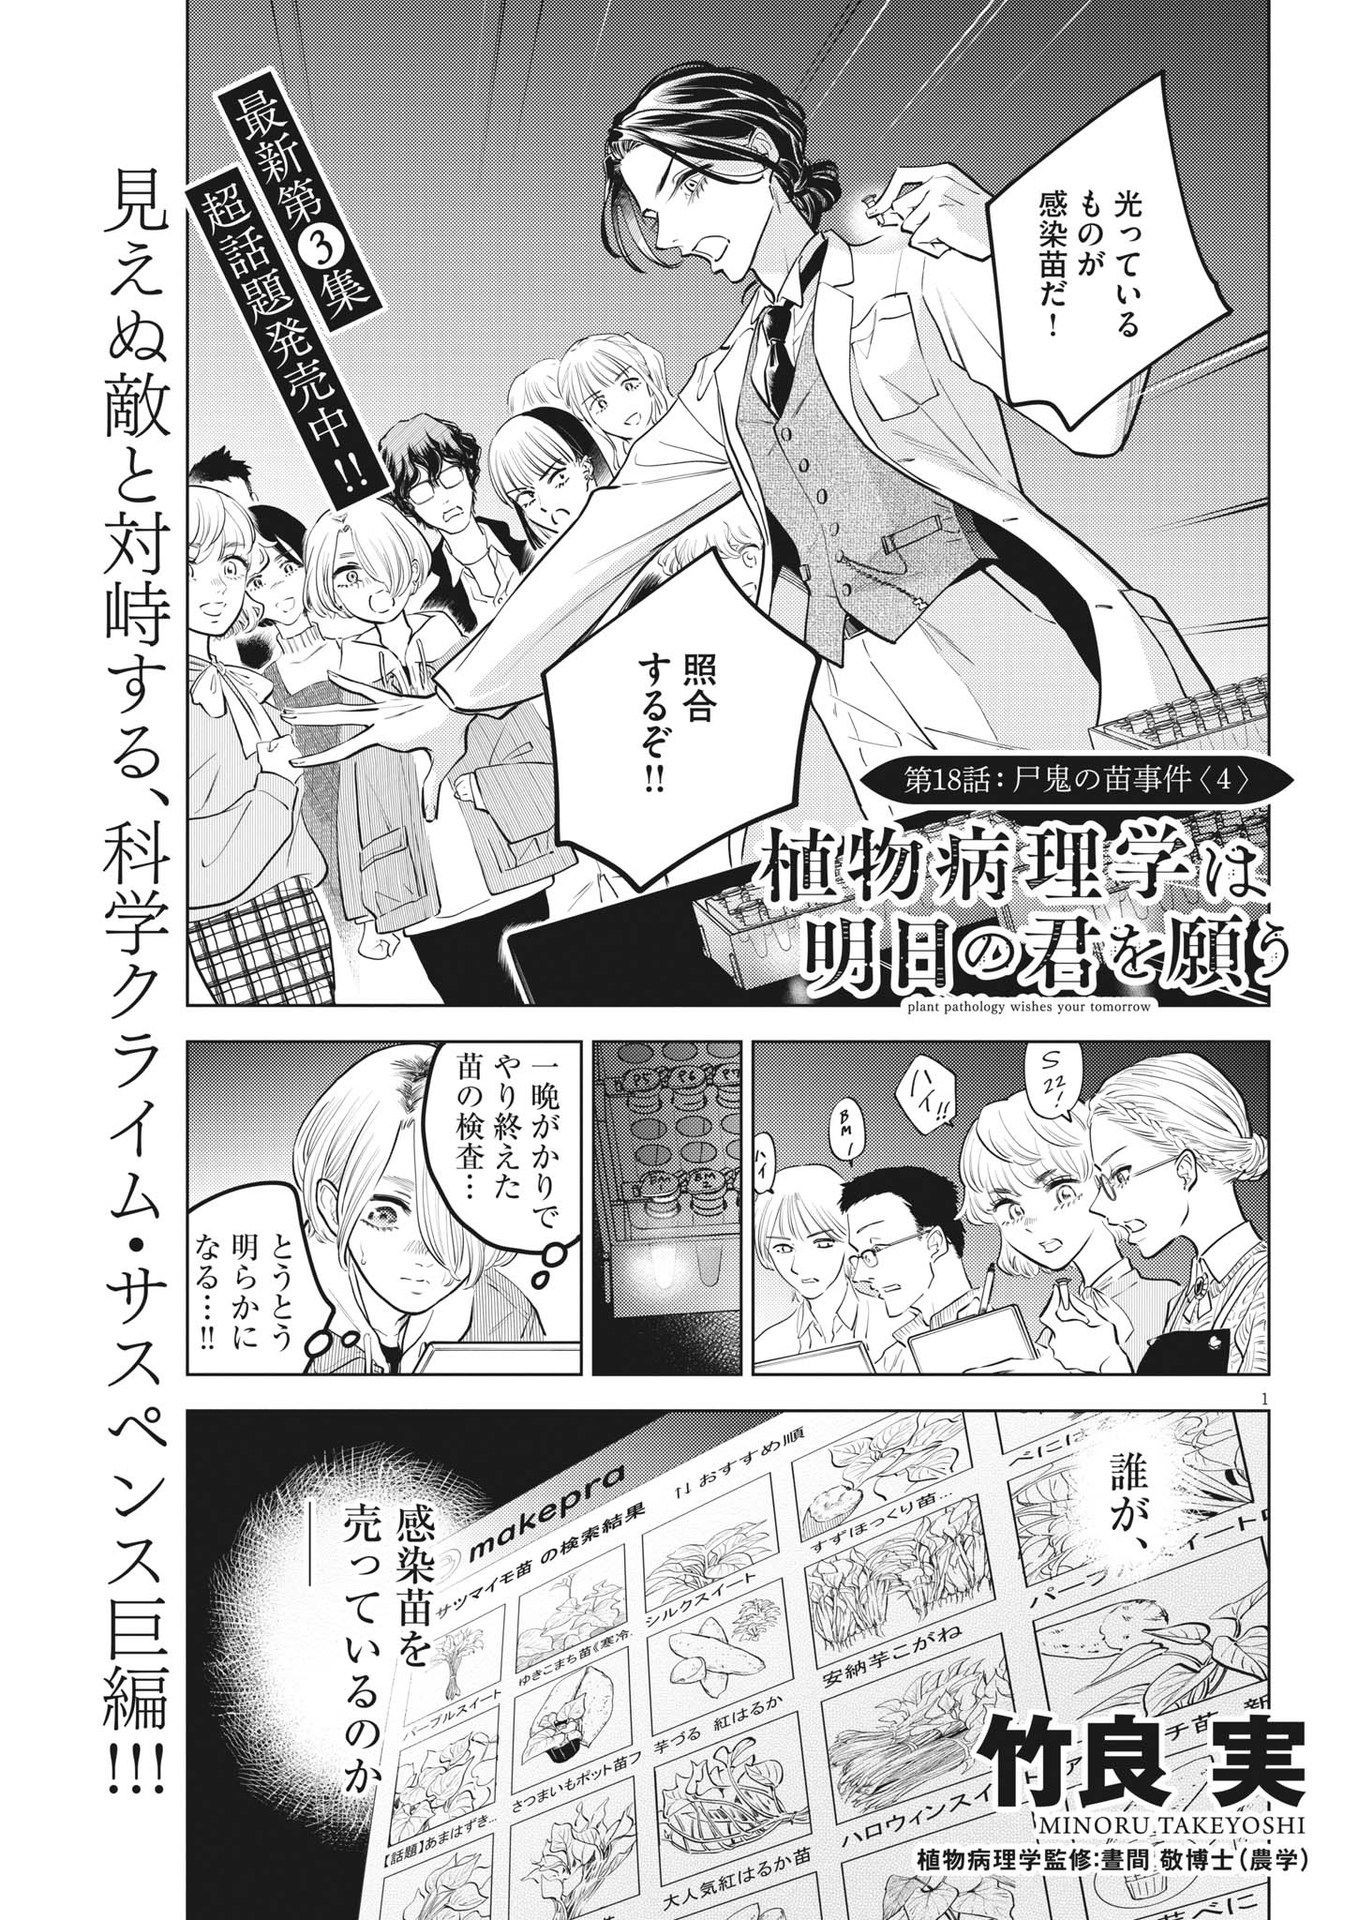 Shokubutsu Byourigaku wa Ashita no Kimi o Negau - Chapter 18 - Page 1